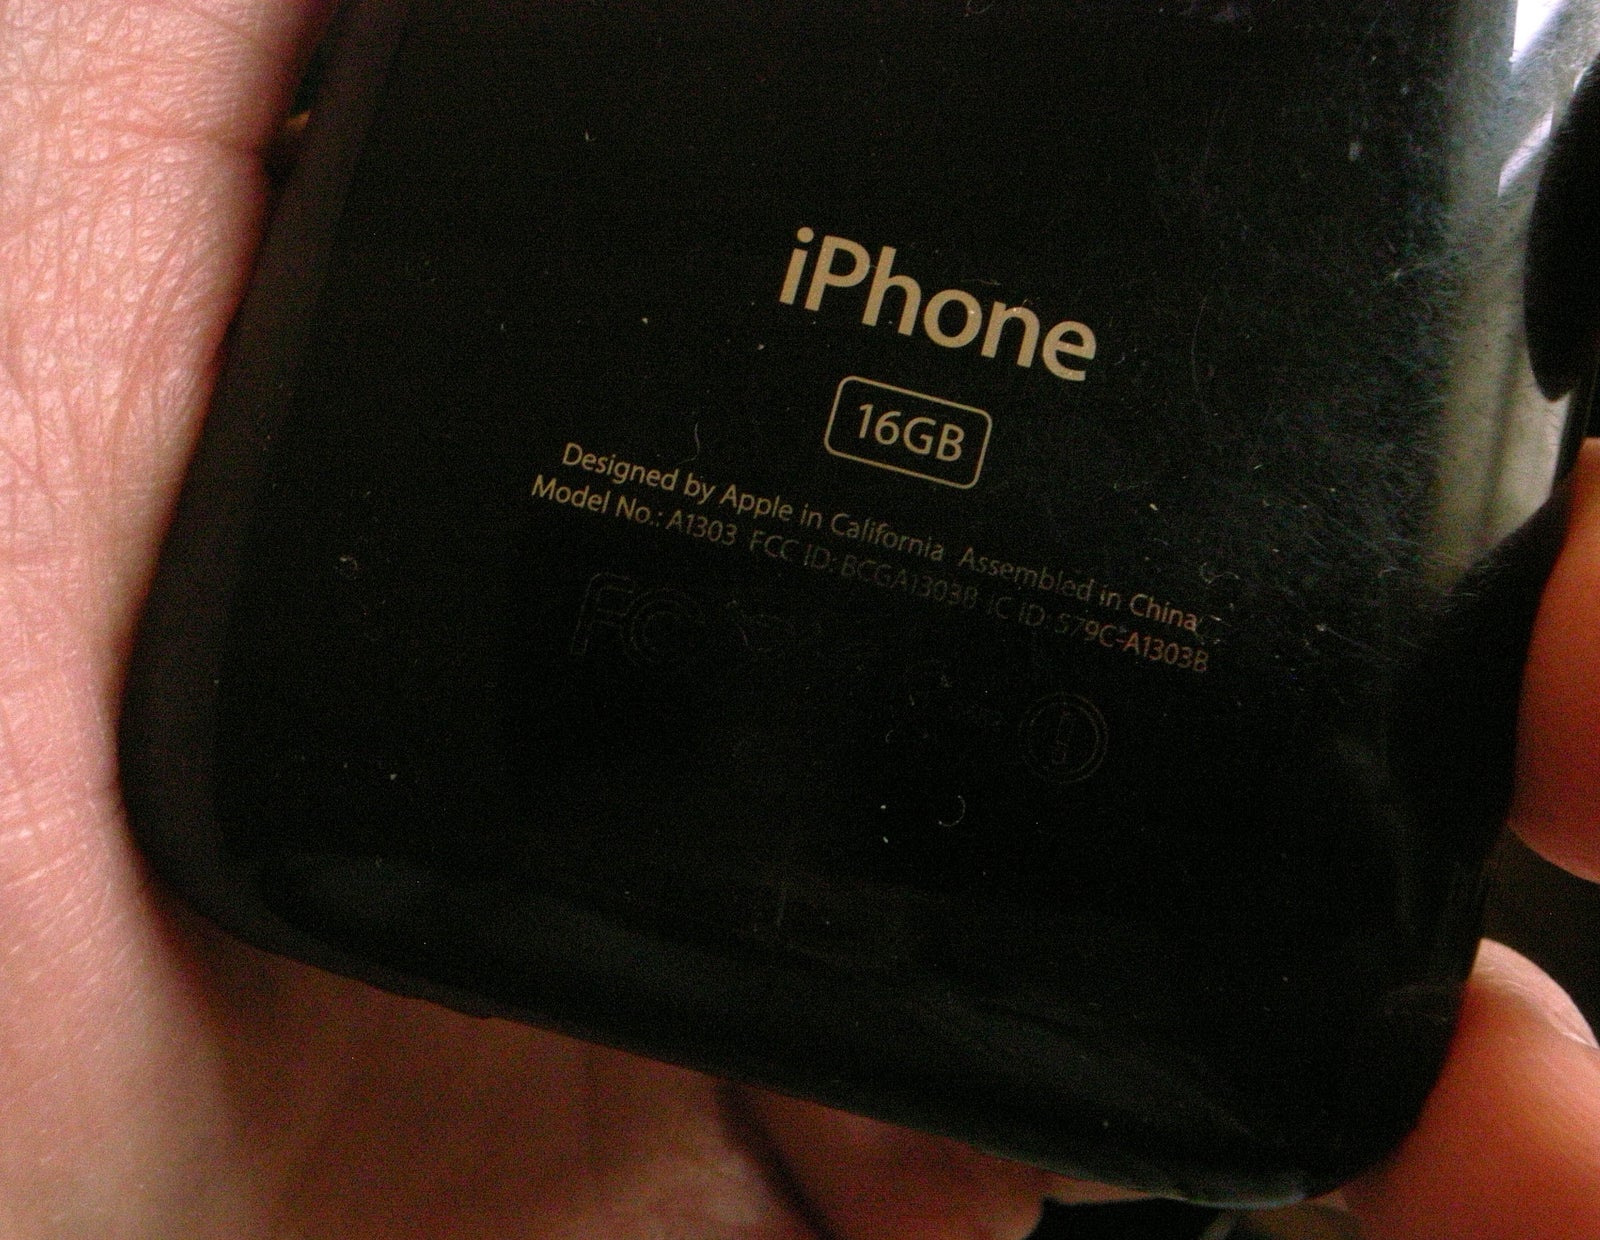 iPhone 3G, 16 GB, sort